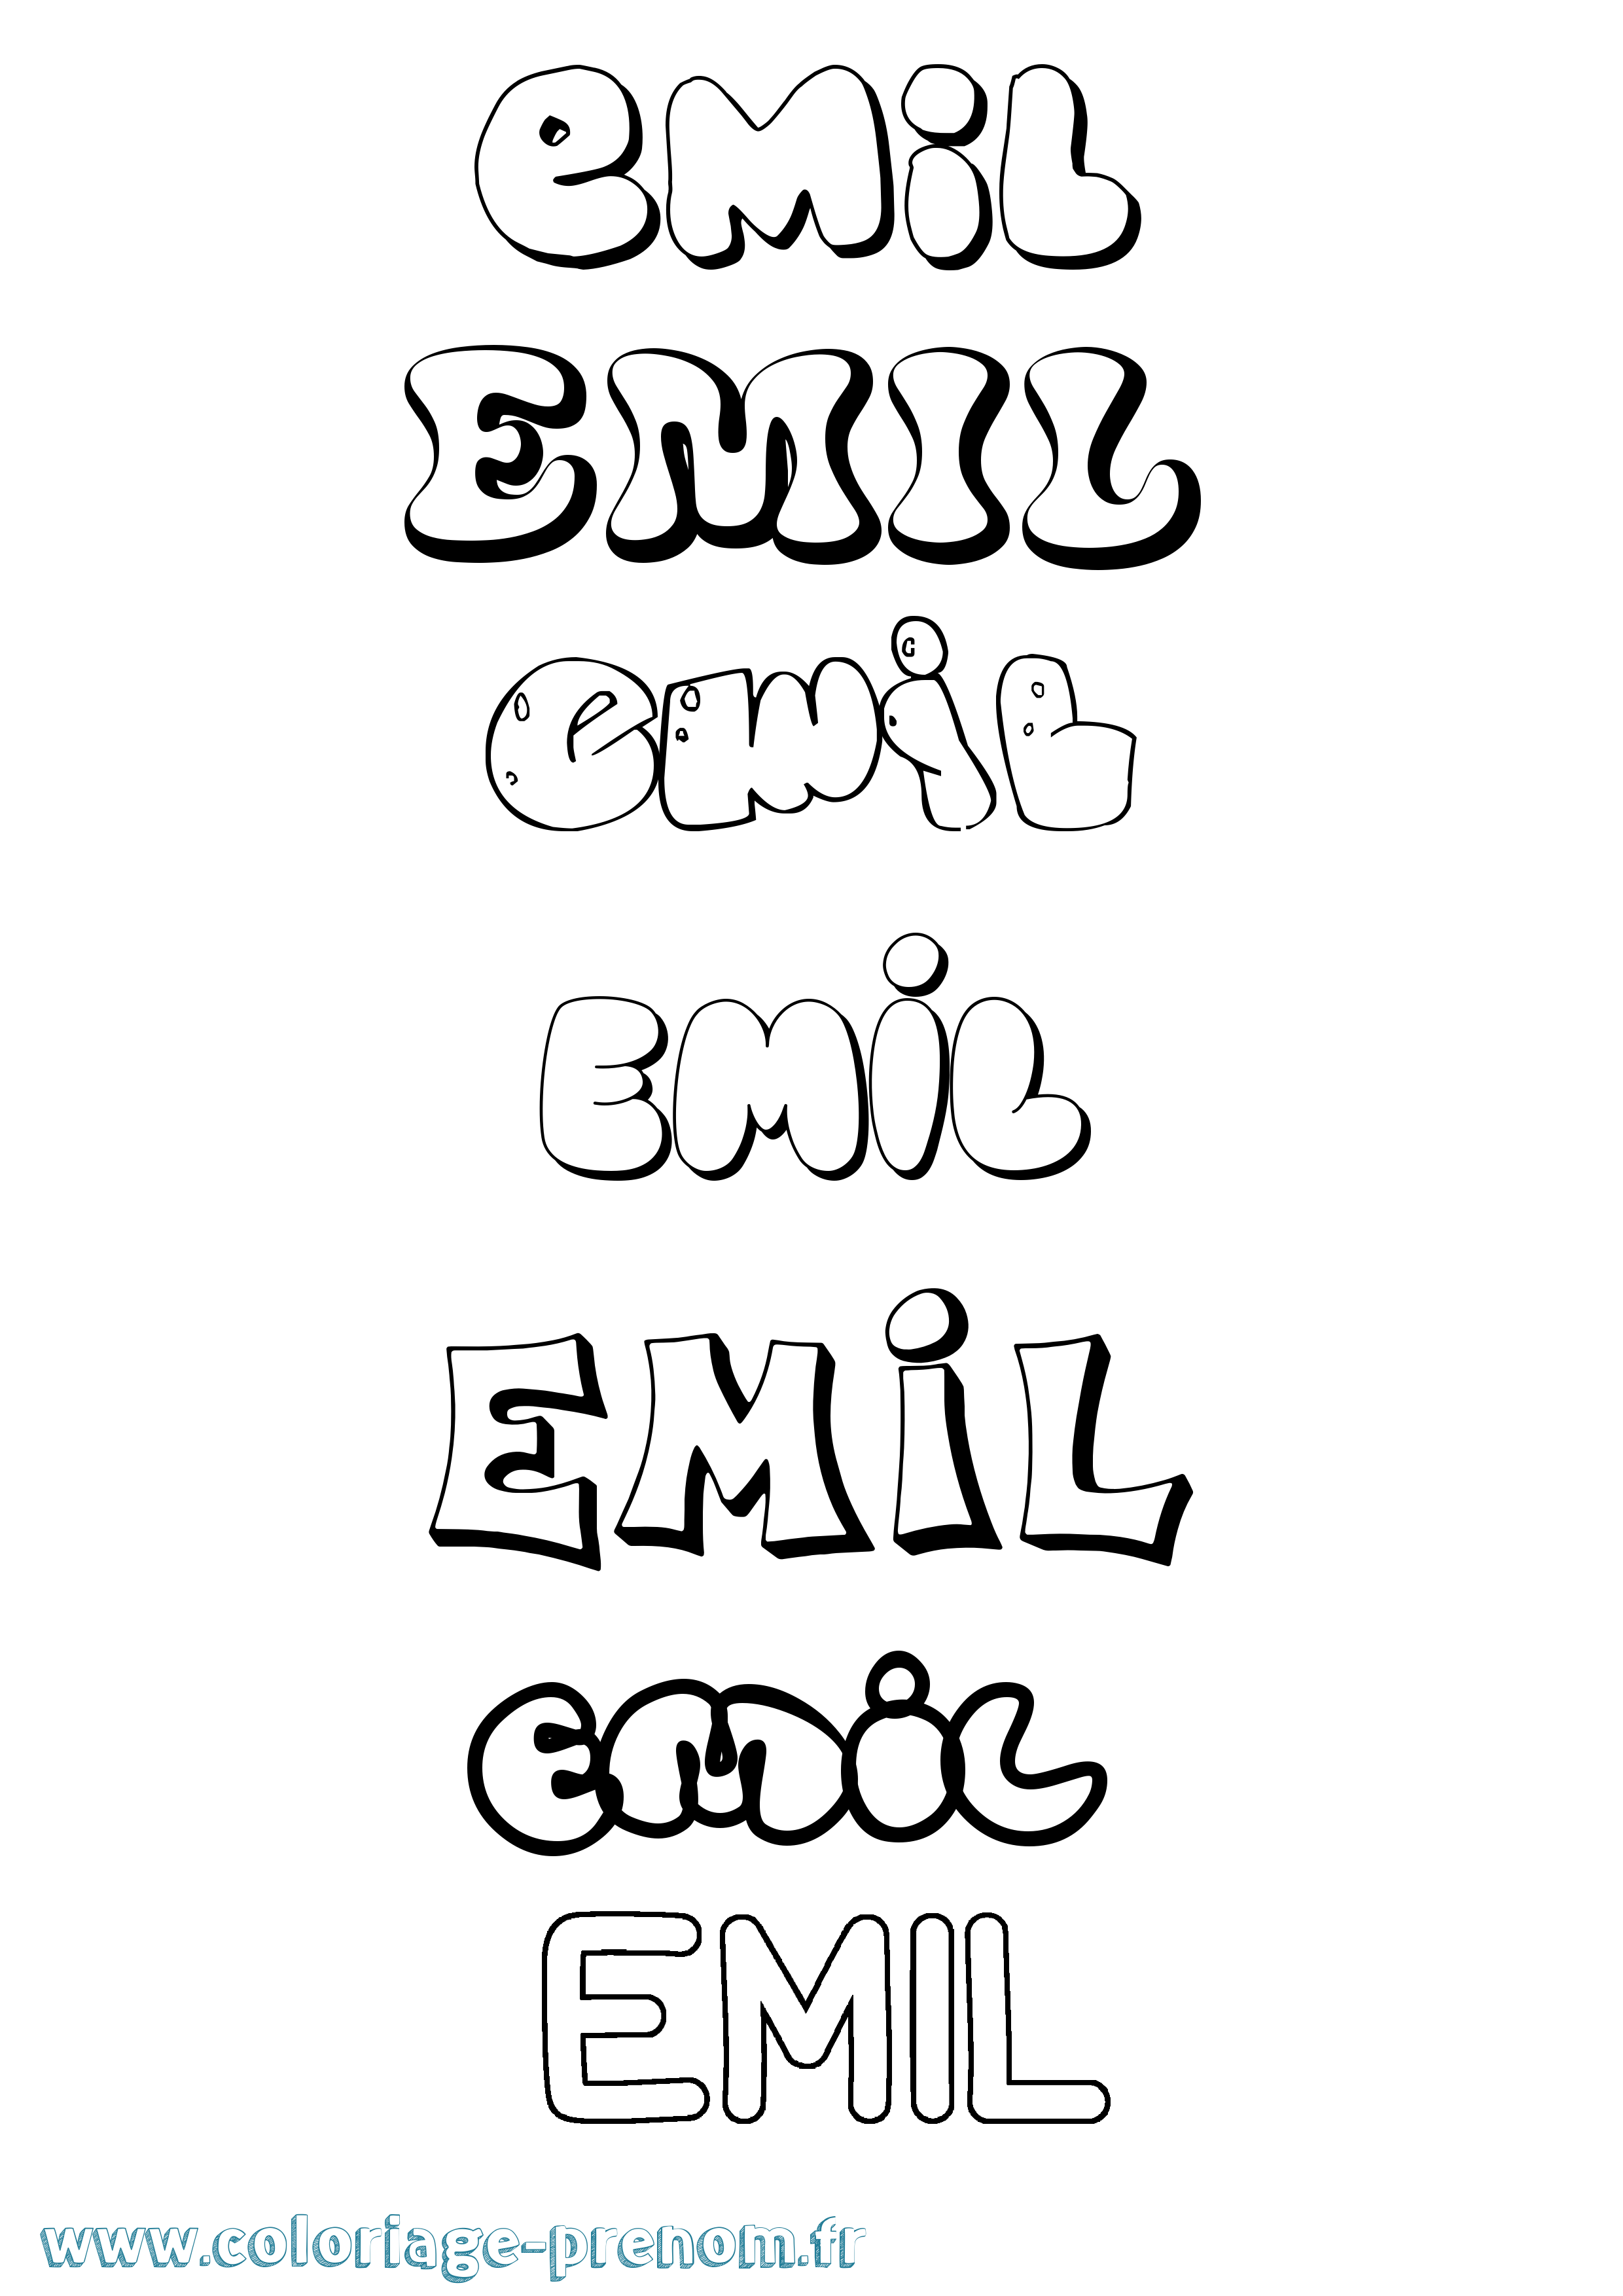 Coloriage prénom Emil Bubble